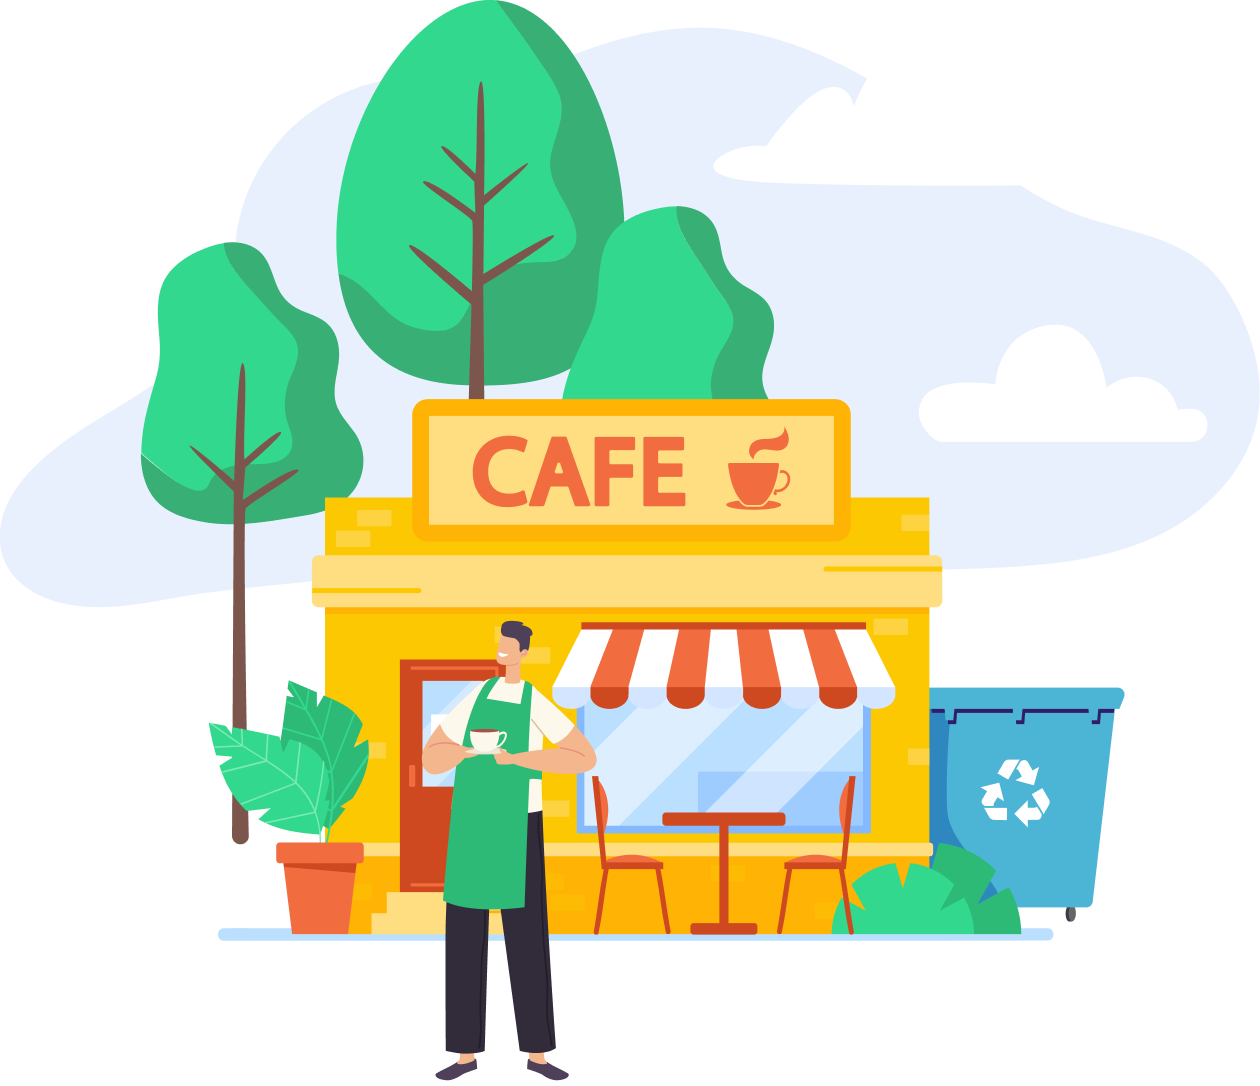 Cafe business waste bin illustration